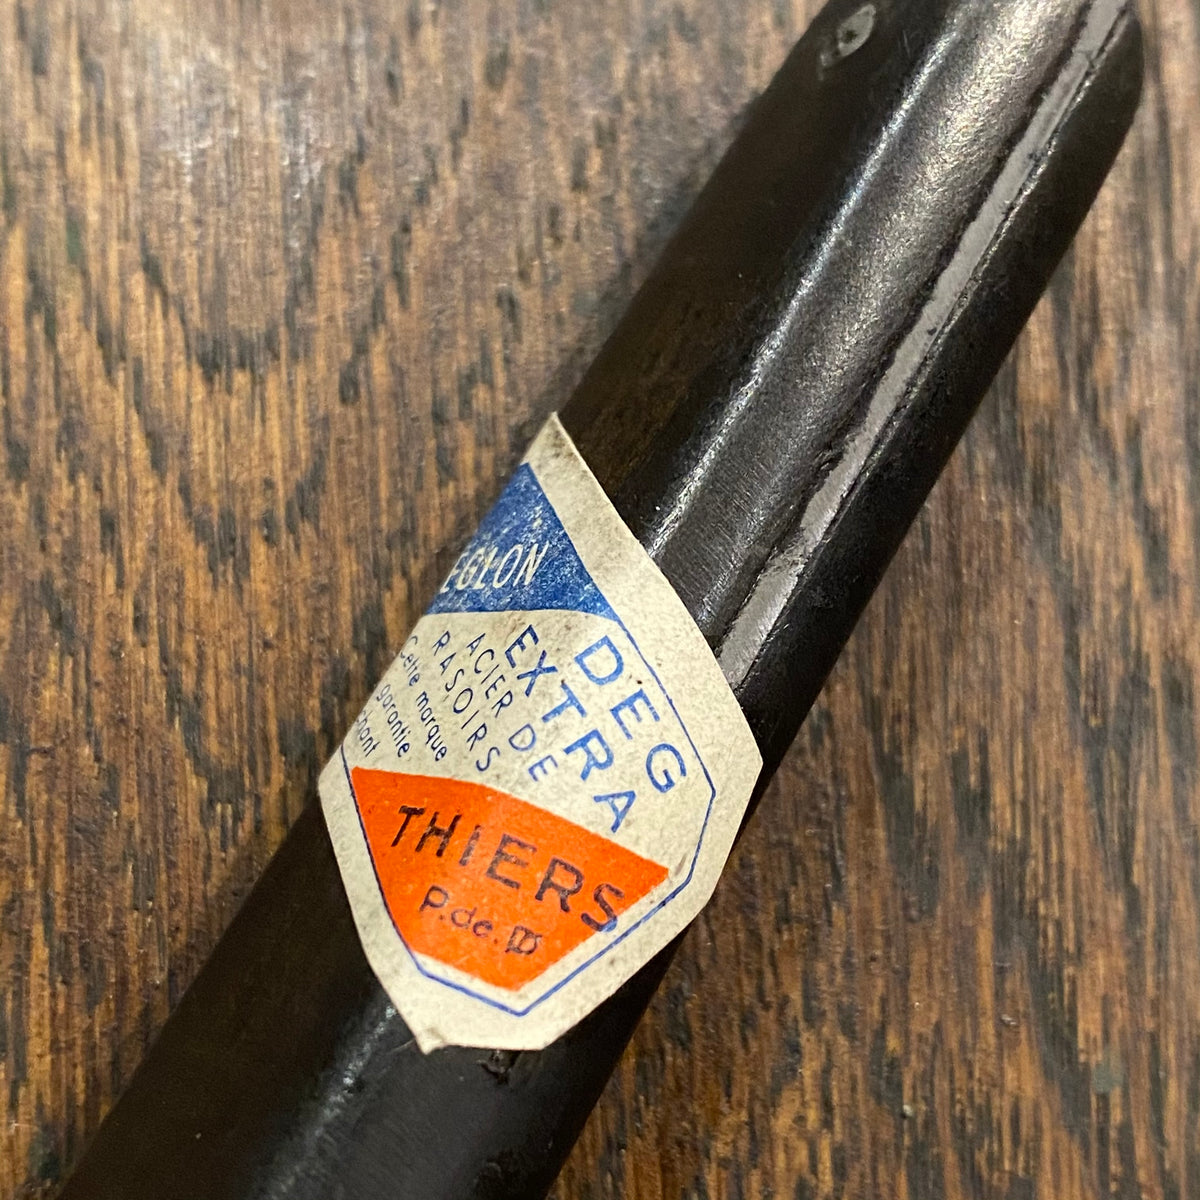 Deglon 2.75” Paring Knife Carbon Steel New Old Stock / Unused Vintage